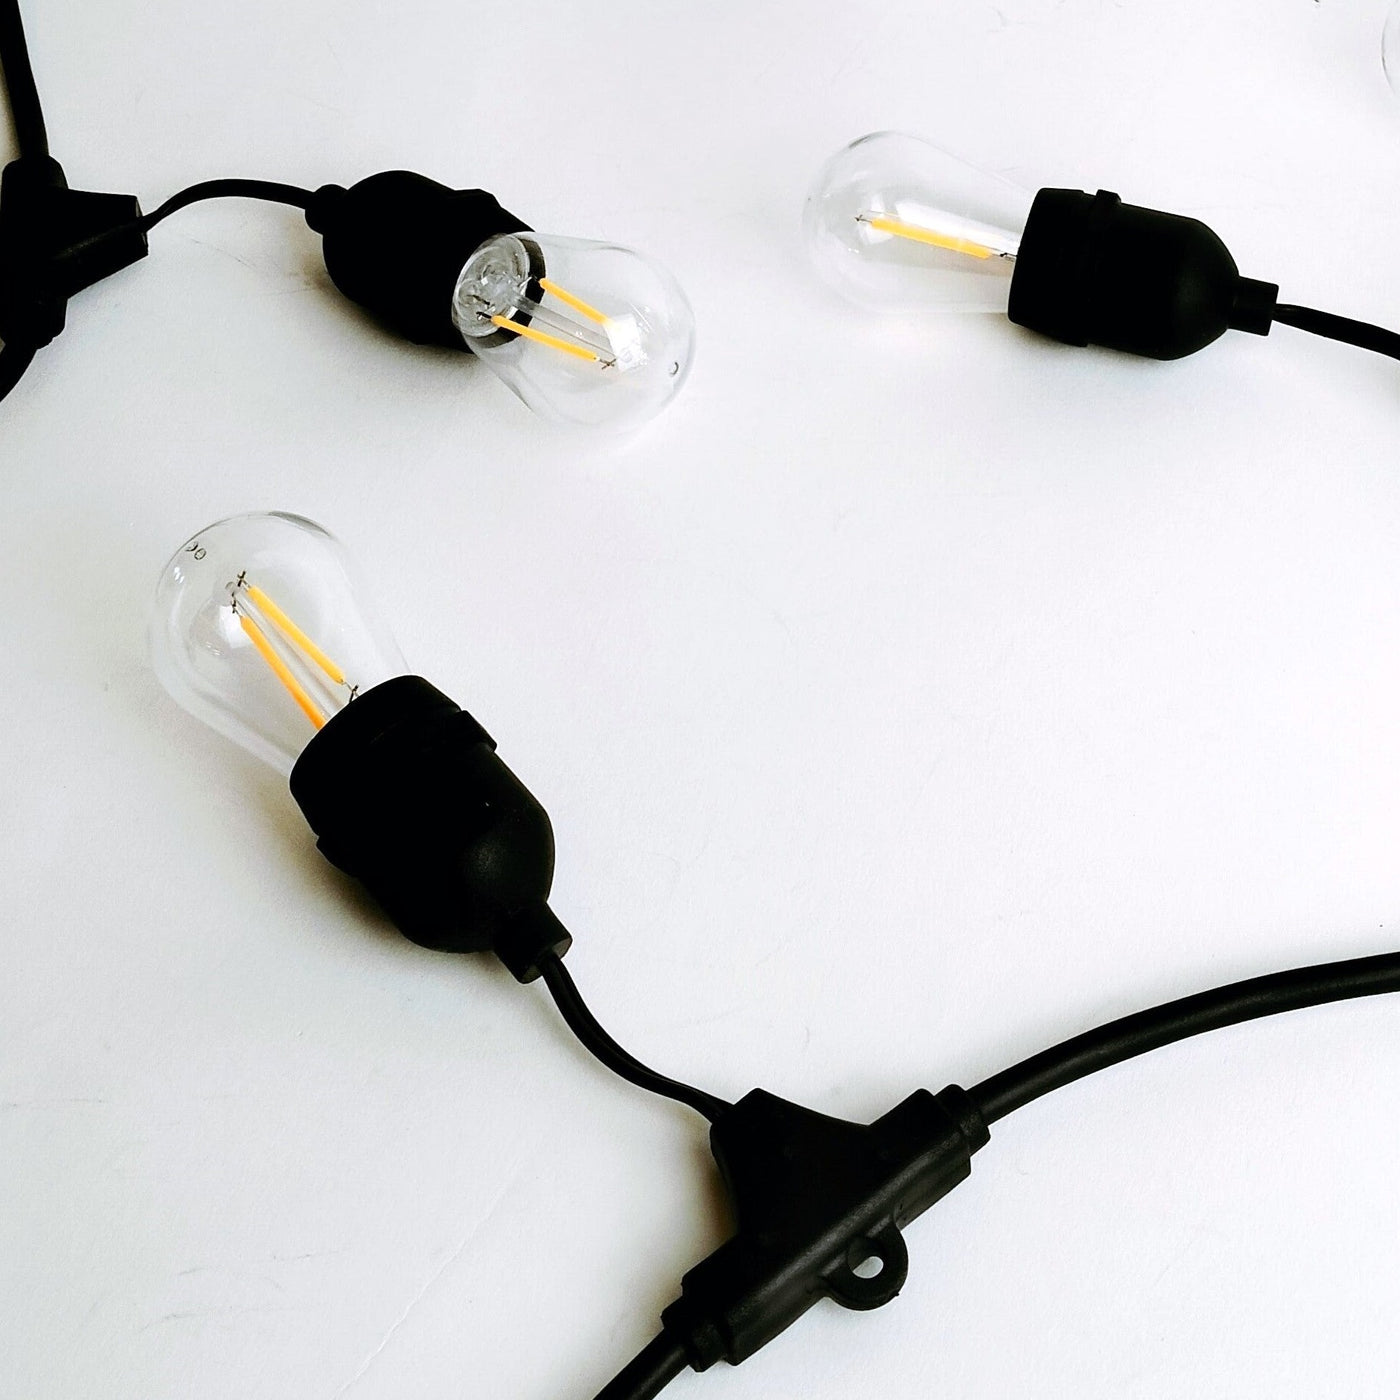 Drop Hang | 10m 10 Bulbs | S14 2w | Dimmable Festoon Lights